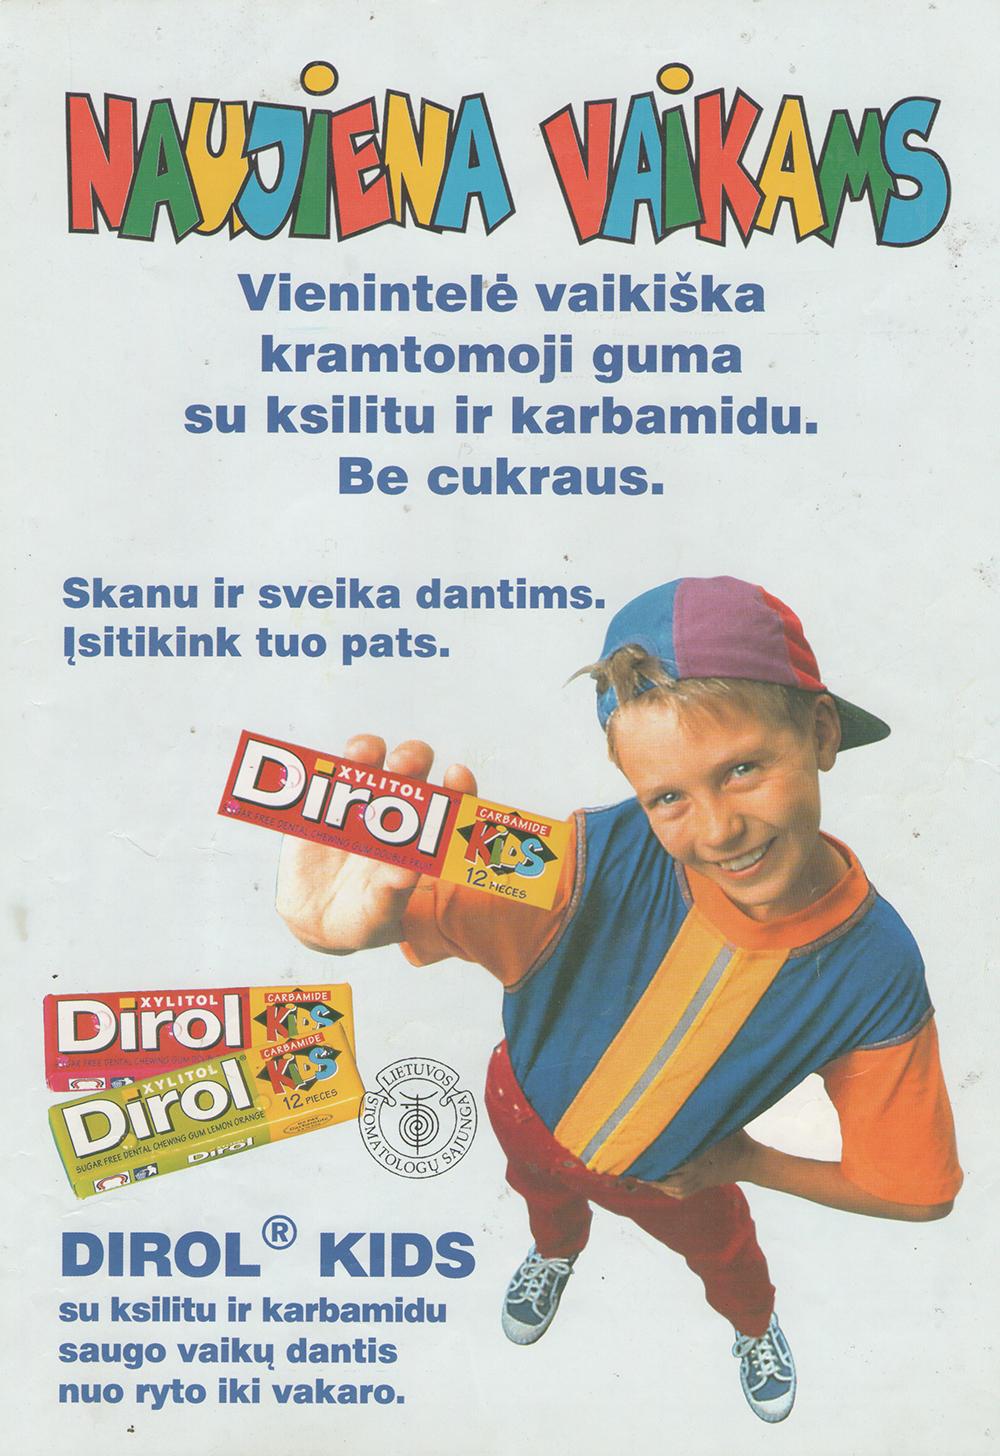 „Dirol Kids“ - Kramtomoji guma be cukraus